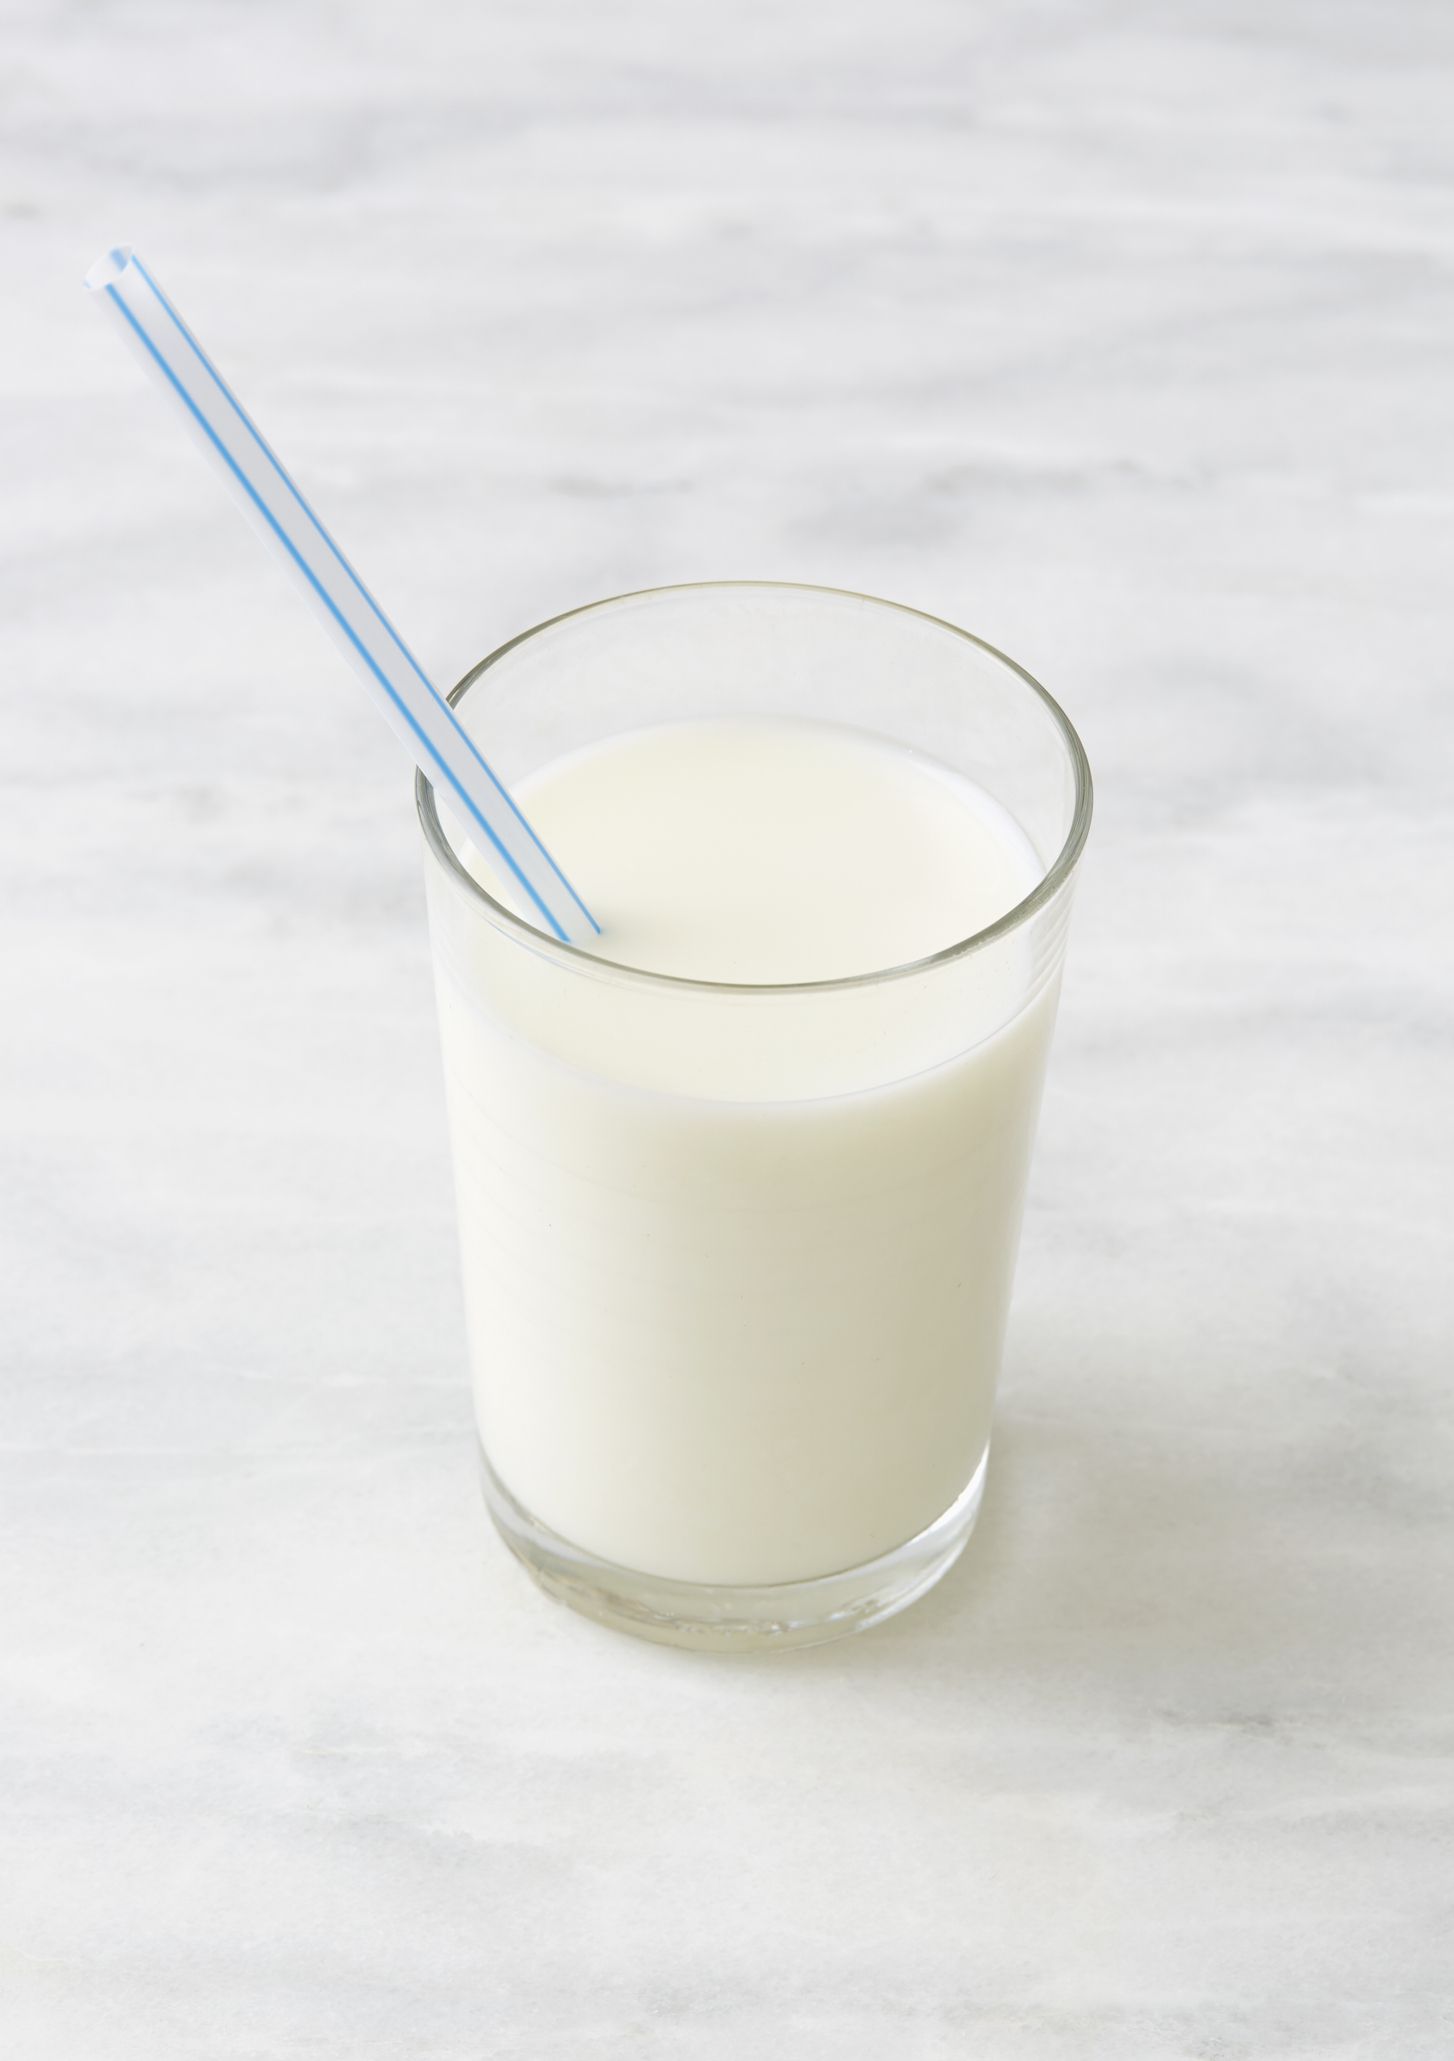 Vol glas melk op een marmeren oppervlak.